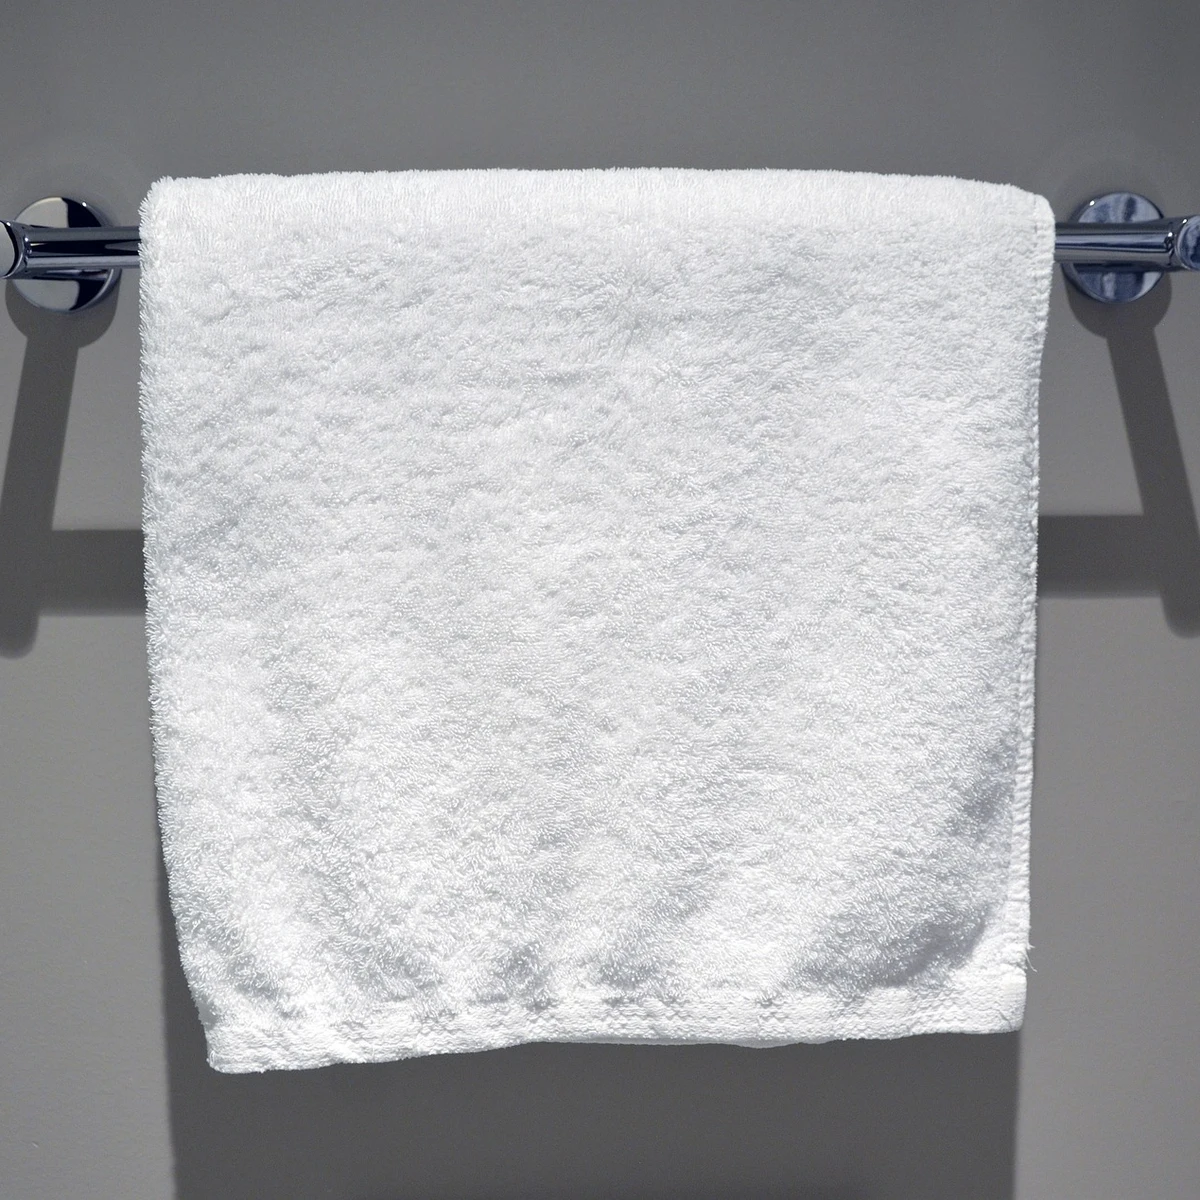 Cómo lavar las toallas blancas de hotel - Itexa